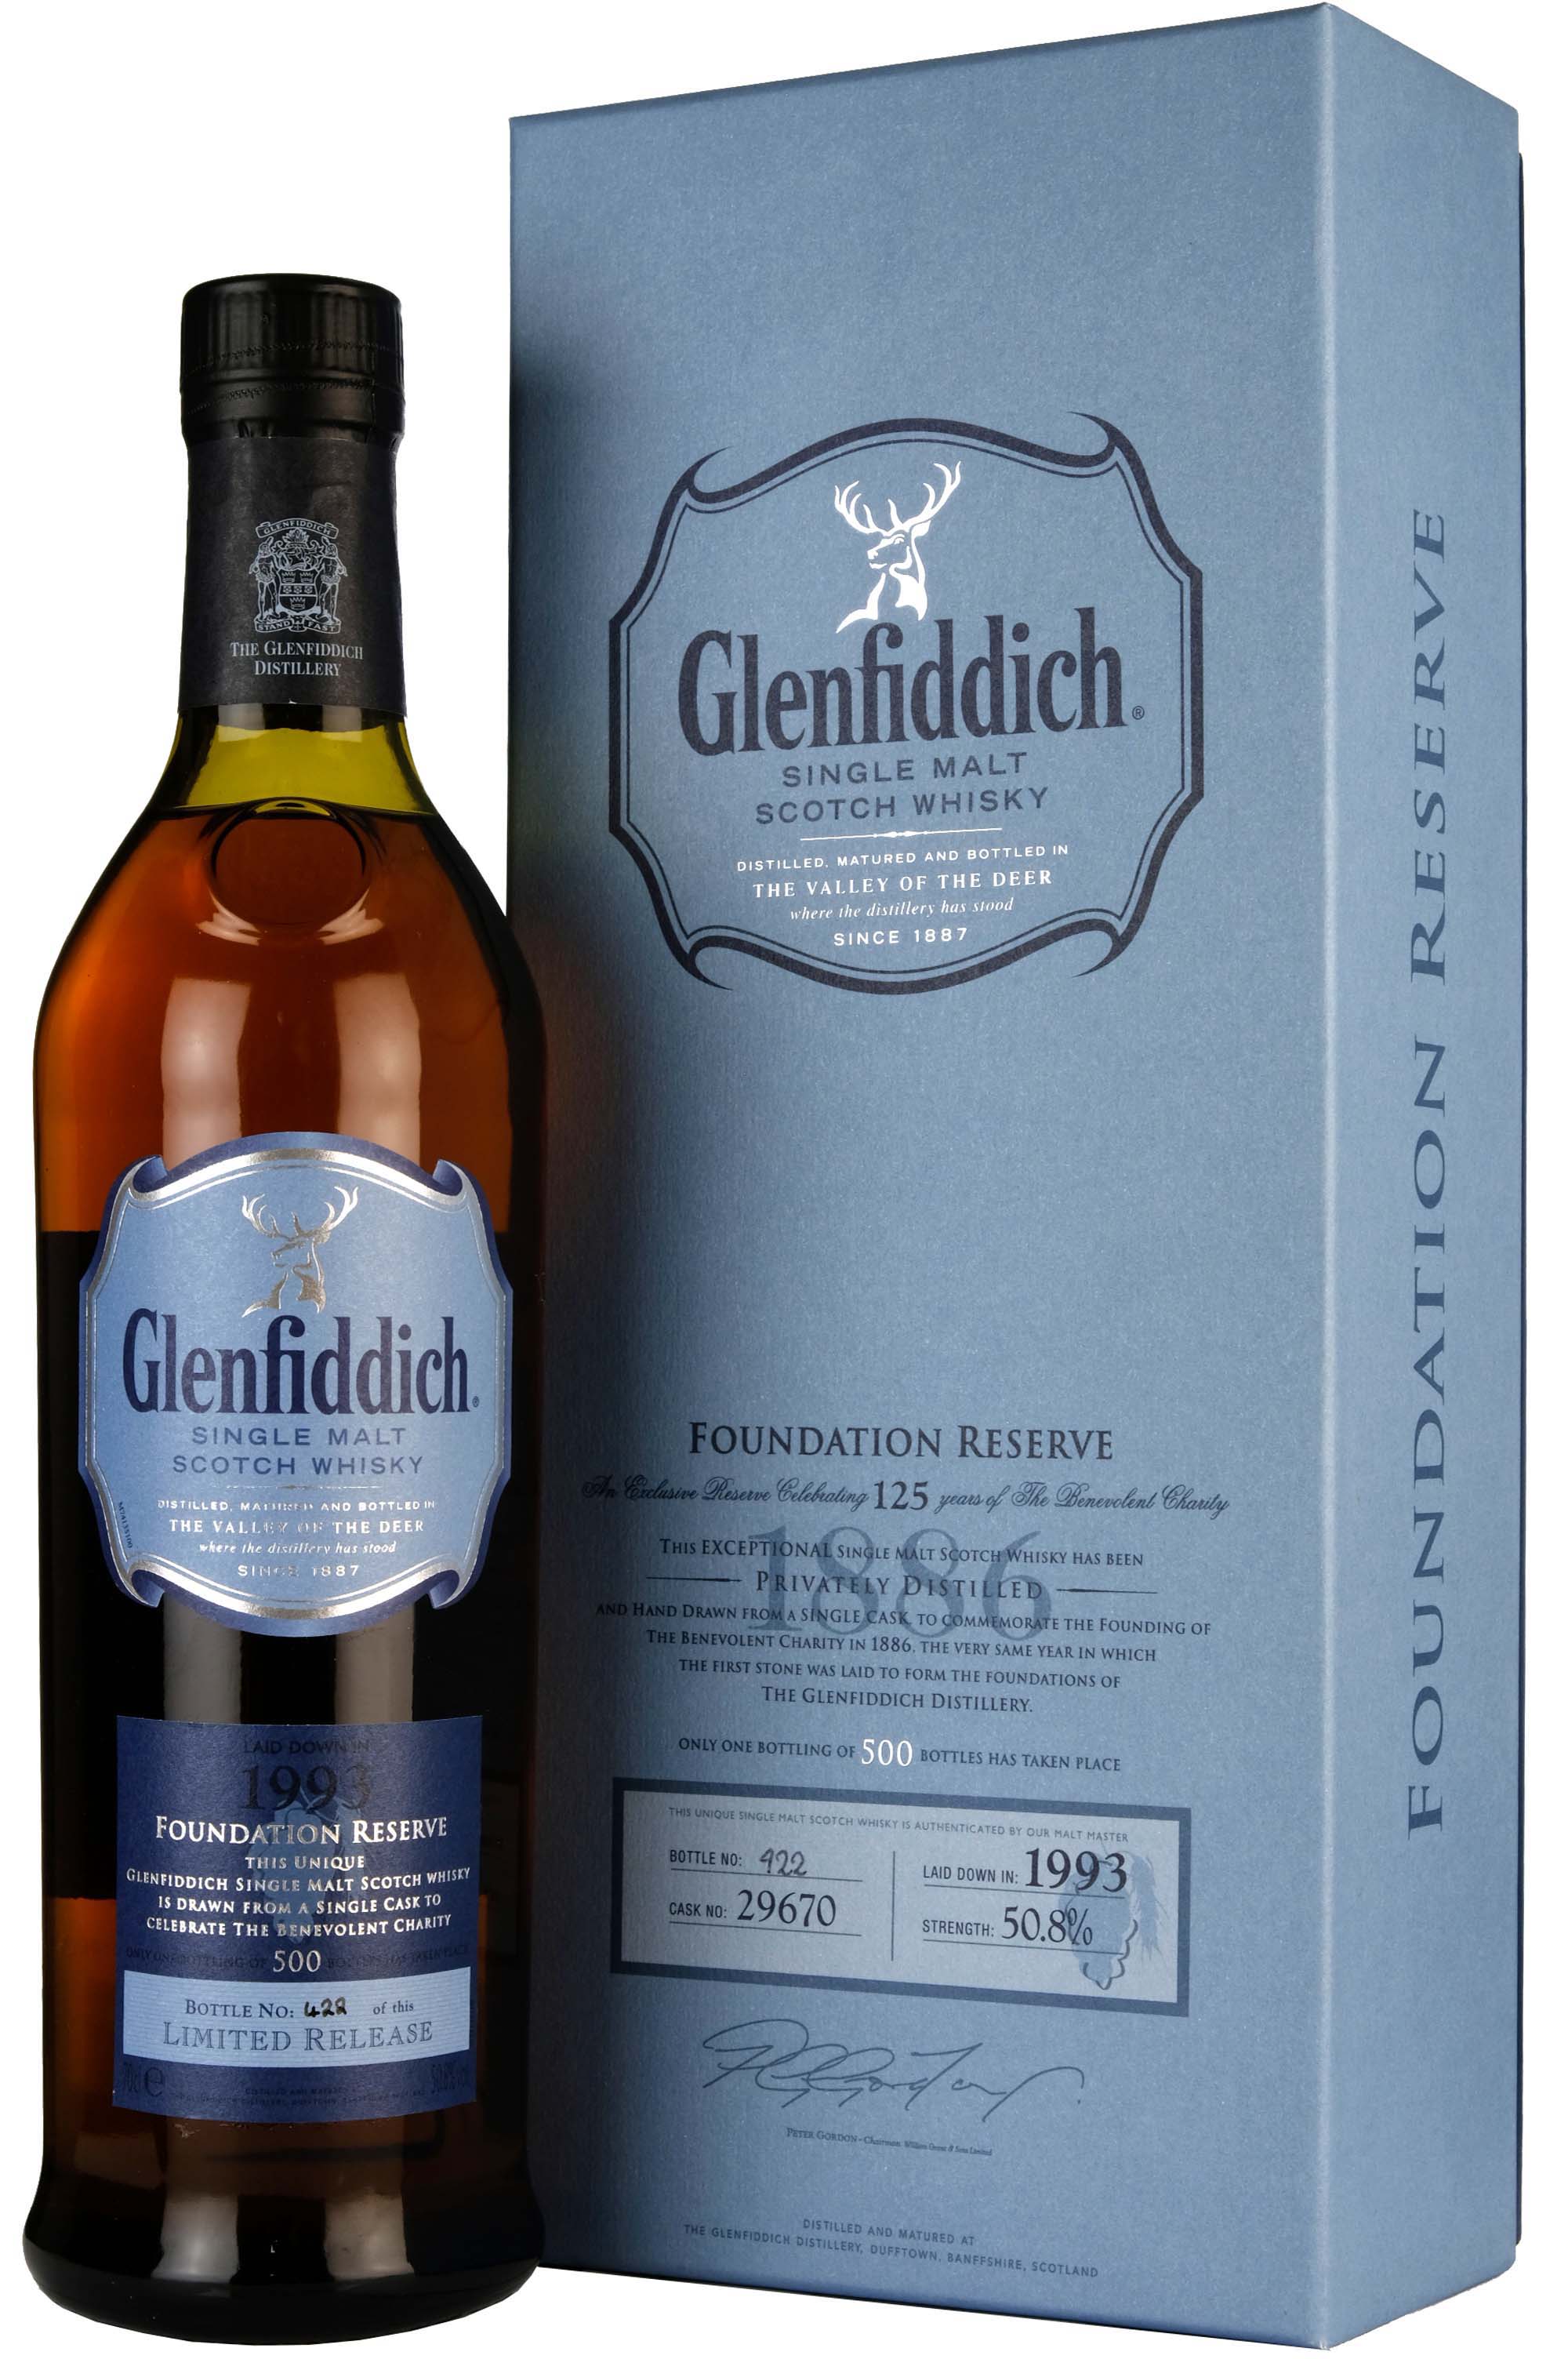 Glenfiddich 1993-2011 Foundation Reserve Single Cask 29670